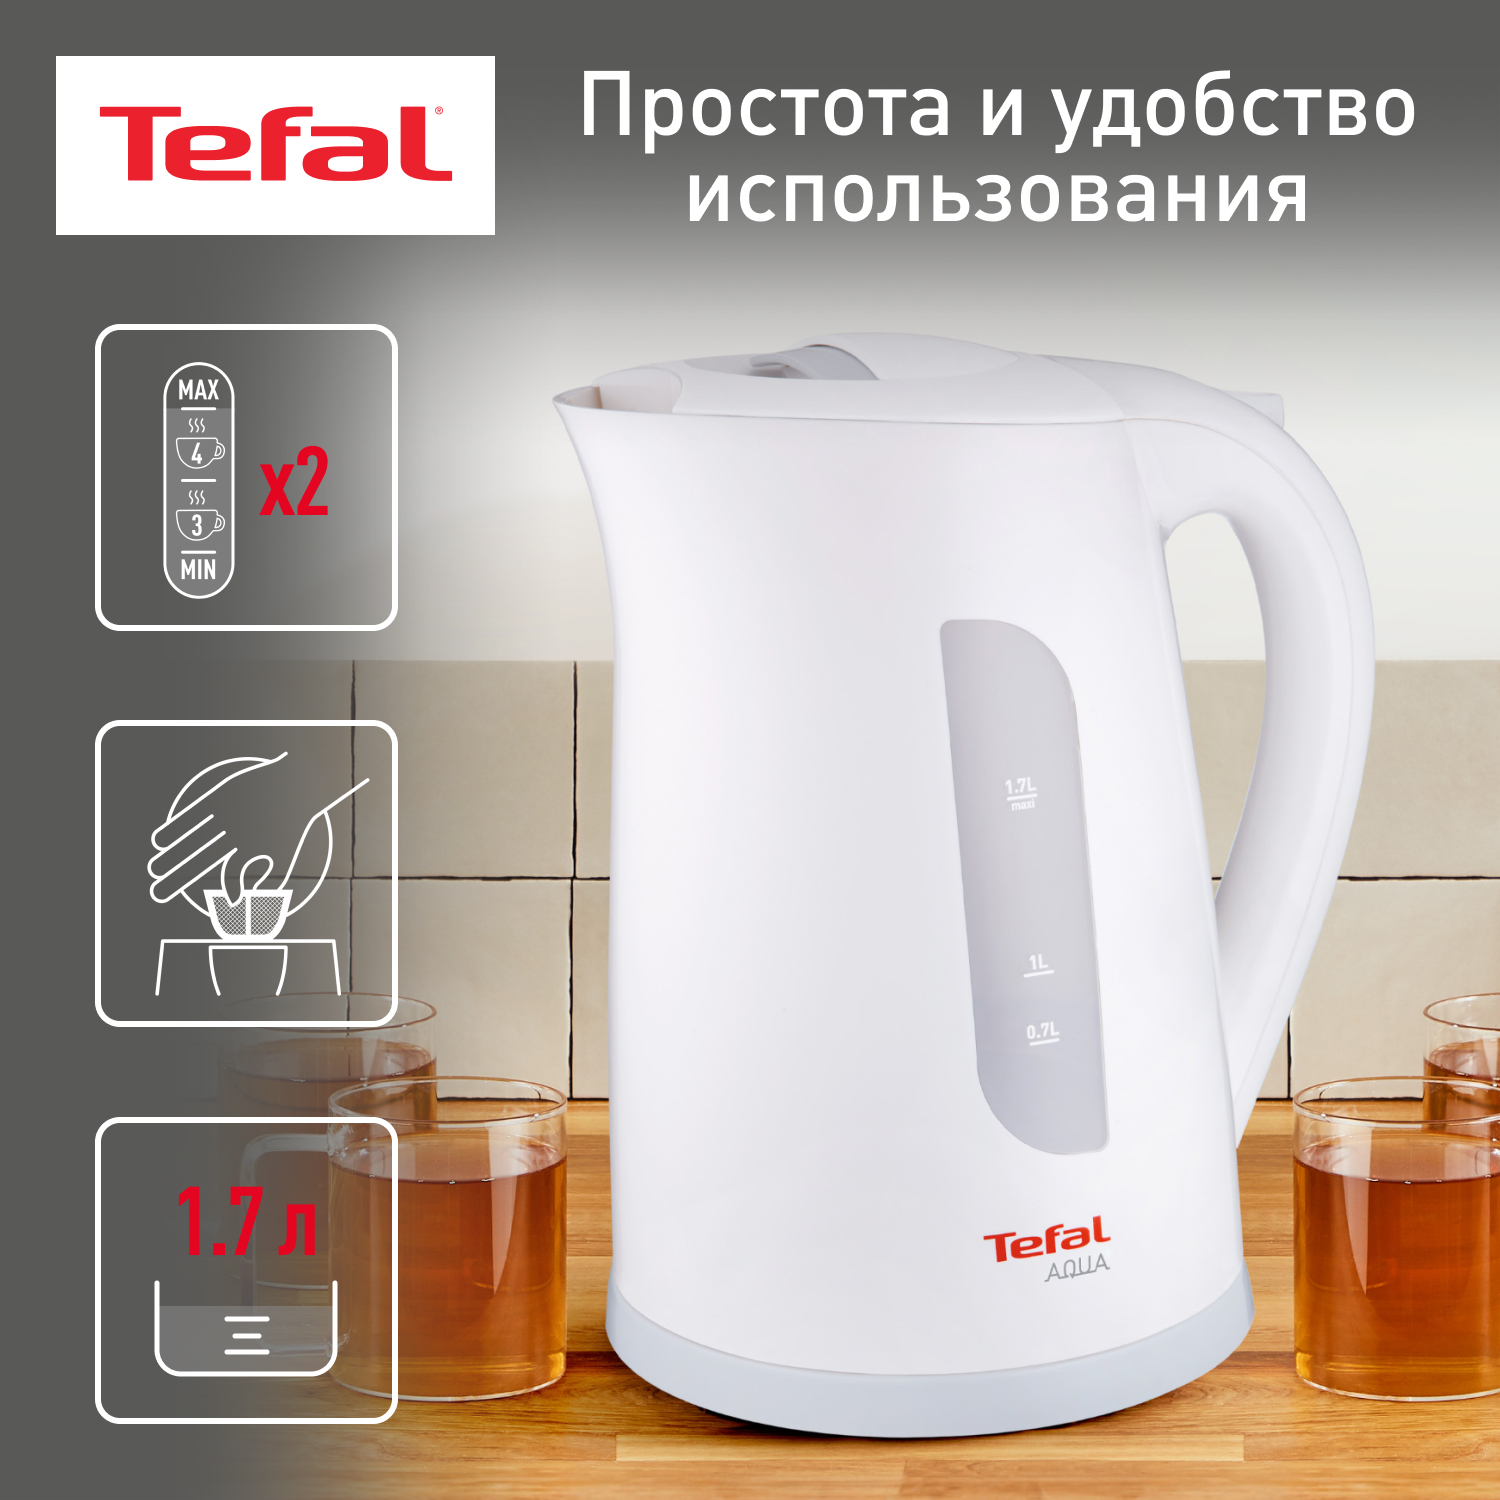 Электрический чайник Tefal Aqua II KO270130, купить в Москве, цены в интернет-магазинах на Мегамаркет